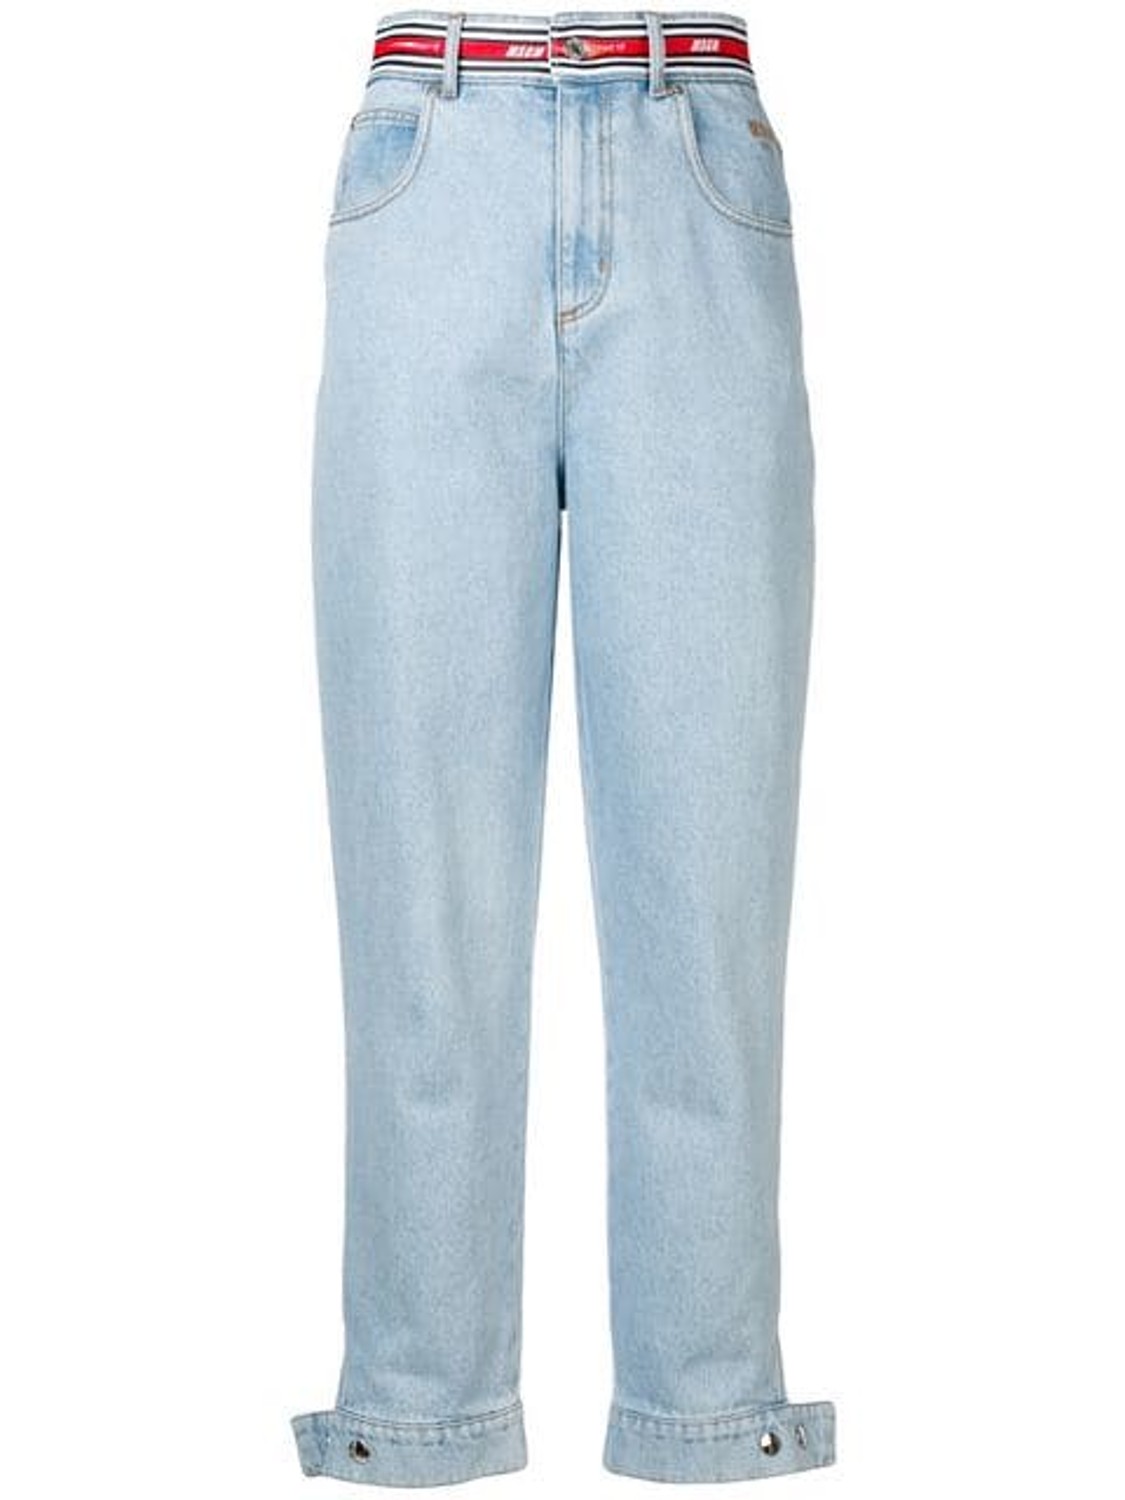 shop MSGM Saldi Pantaloni: Pantalone MSGM, jeans chiaro, modello vita alta, cintura con logo a contrasto, stretti infondo con bottoni automatici, quattro tasche.

Composizione: 100% cotone. number 1422